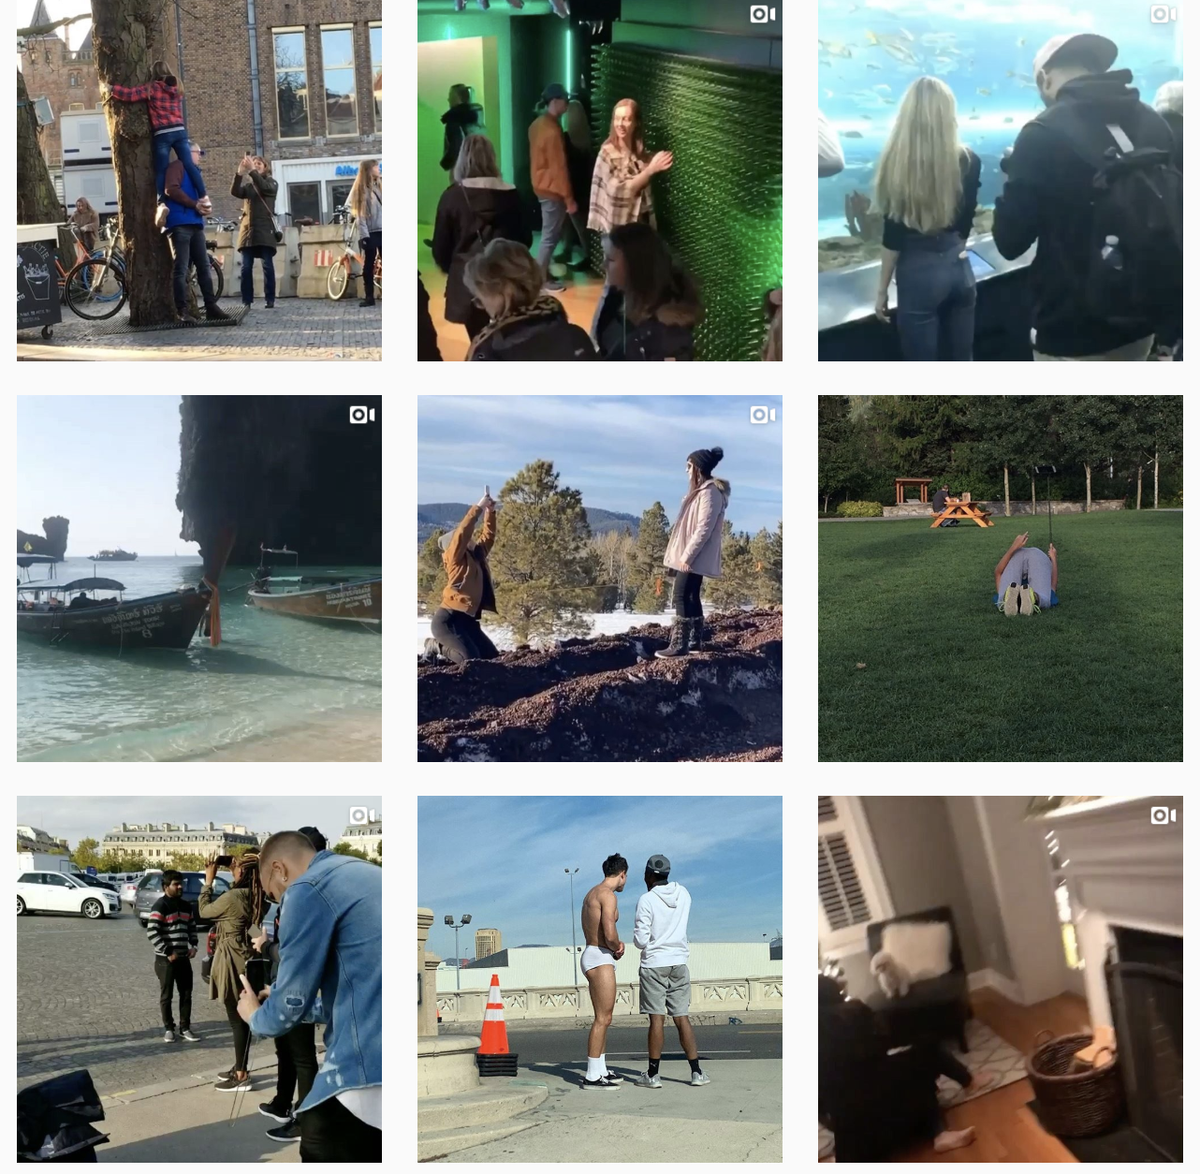 Cuenta de Instagram @InfluencersInTheWild muestra las divertidas escenas detrás de cámaras de las sesiones de fotos de influencers